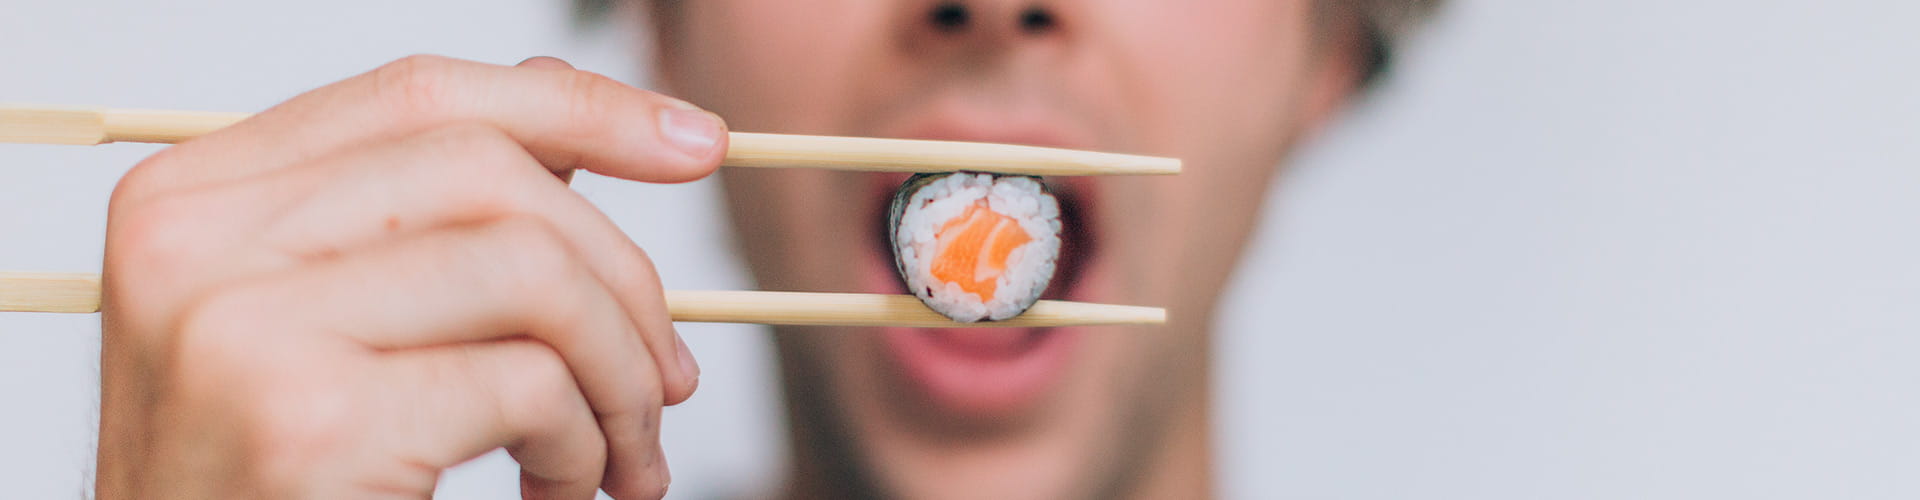 8 cadenas de sushi que tienes que conocer